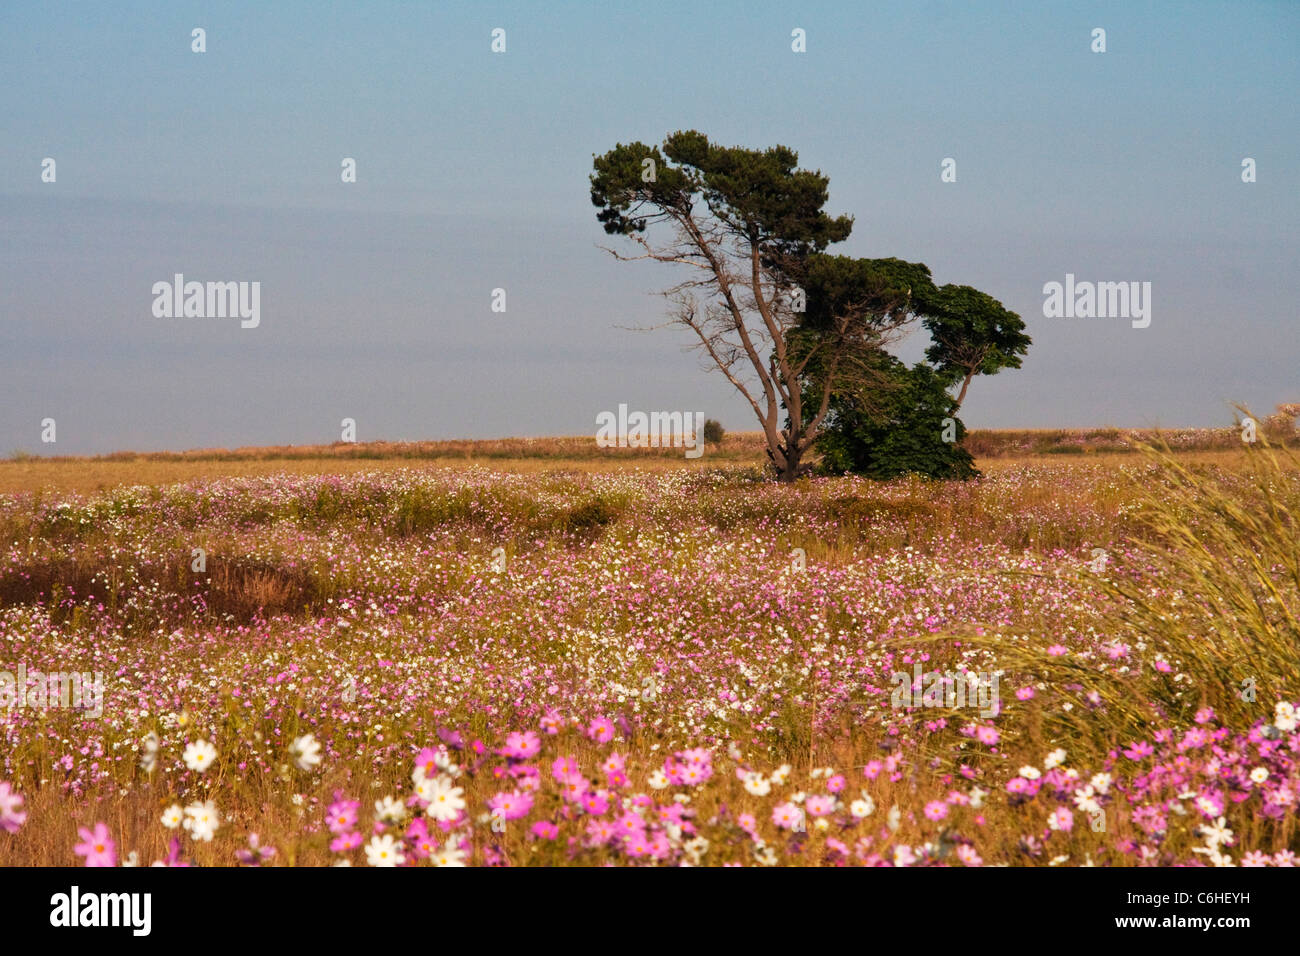 Highveld paysage avec un pin entouré par un champ de cosmos Banque D'Images